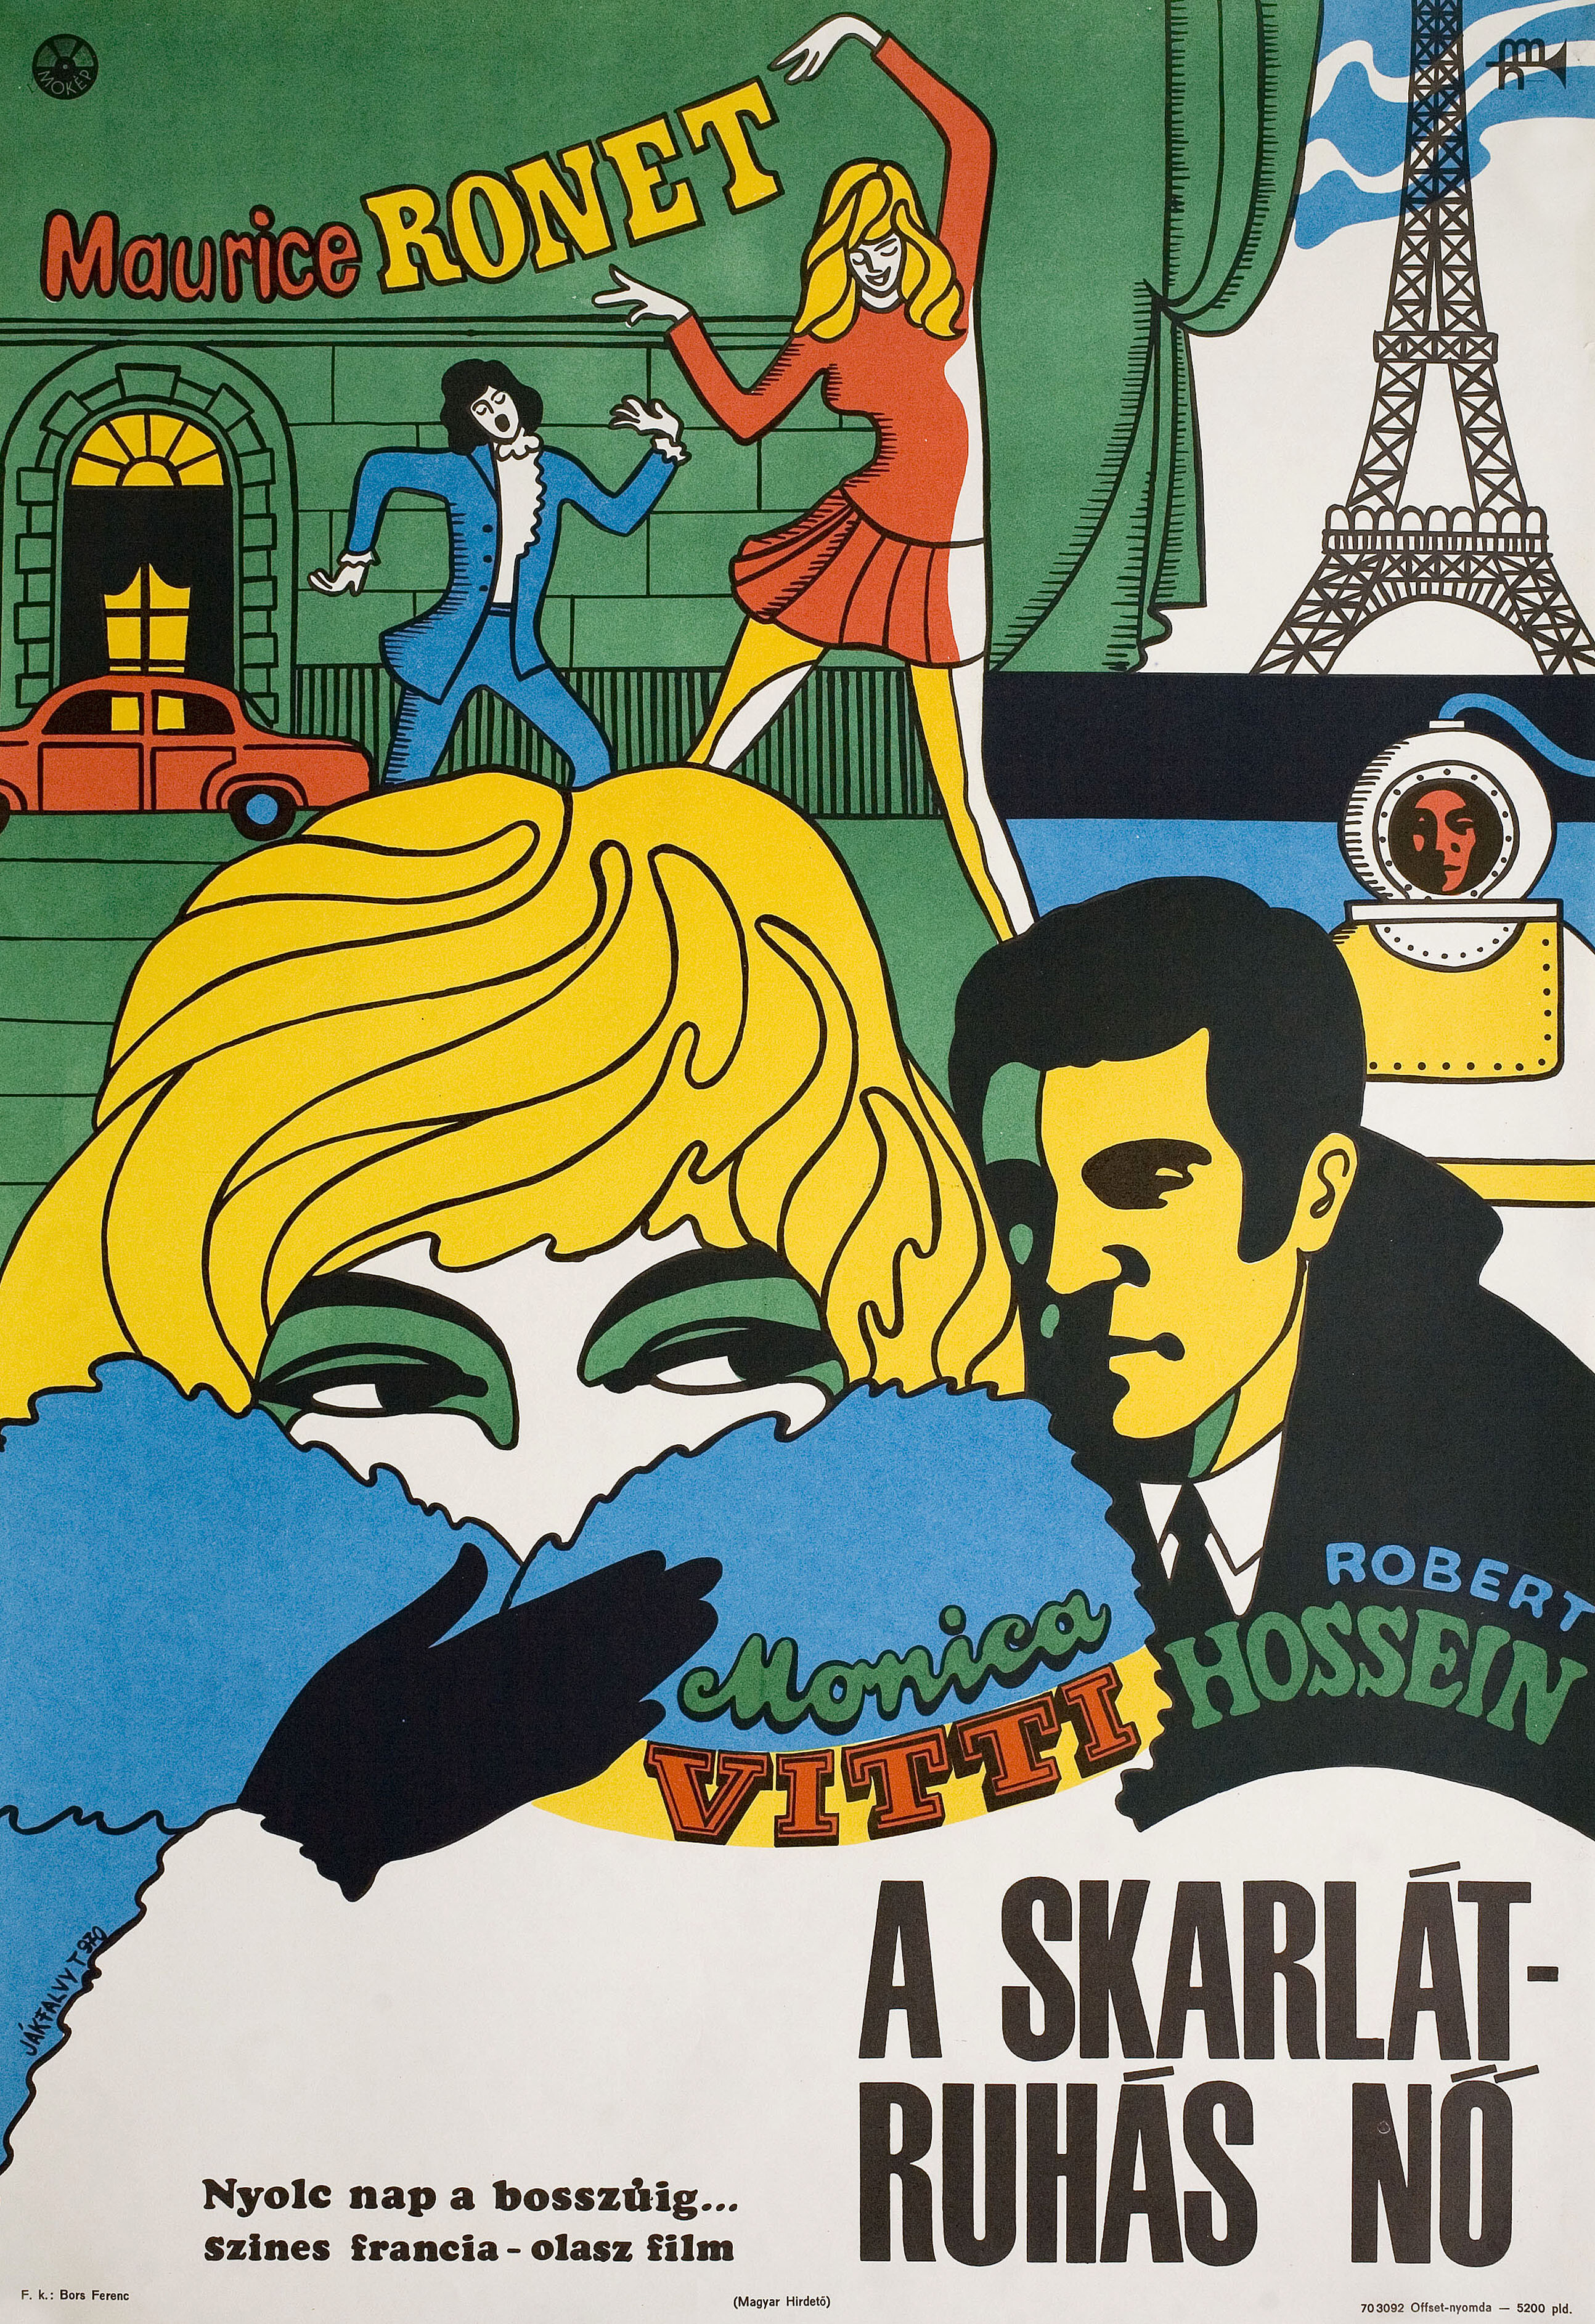 Алая женщина (Scarlet Lady, 1969), режиссёр Жан Валер, венгерский постер к фильму, художник Тибор Якфалви (психоделическое искусство, 1970 год)